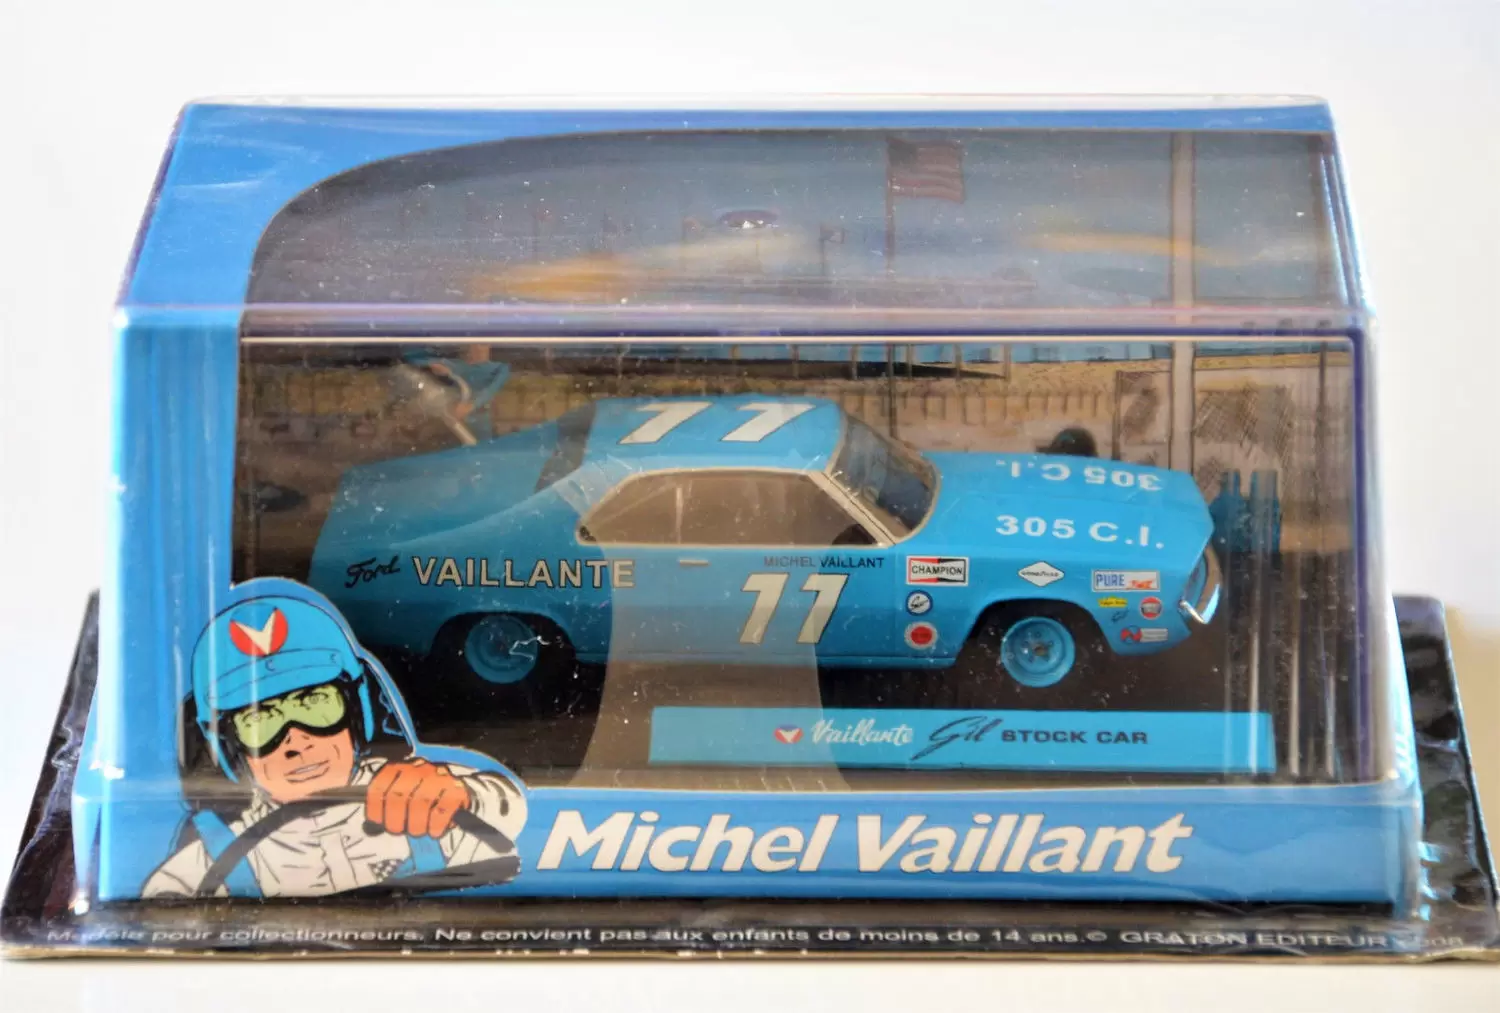 Les voitures de Michel Vaillant - Vaillante Gil Stock Car